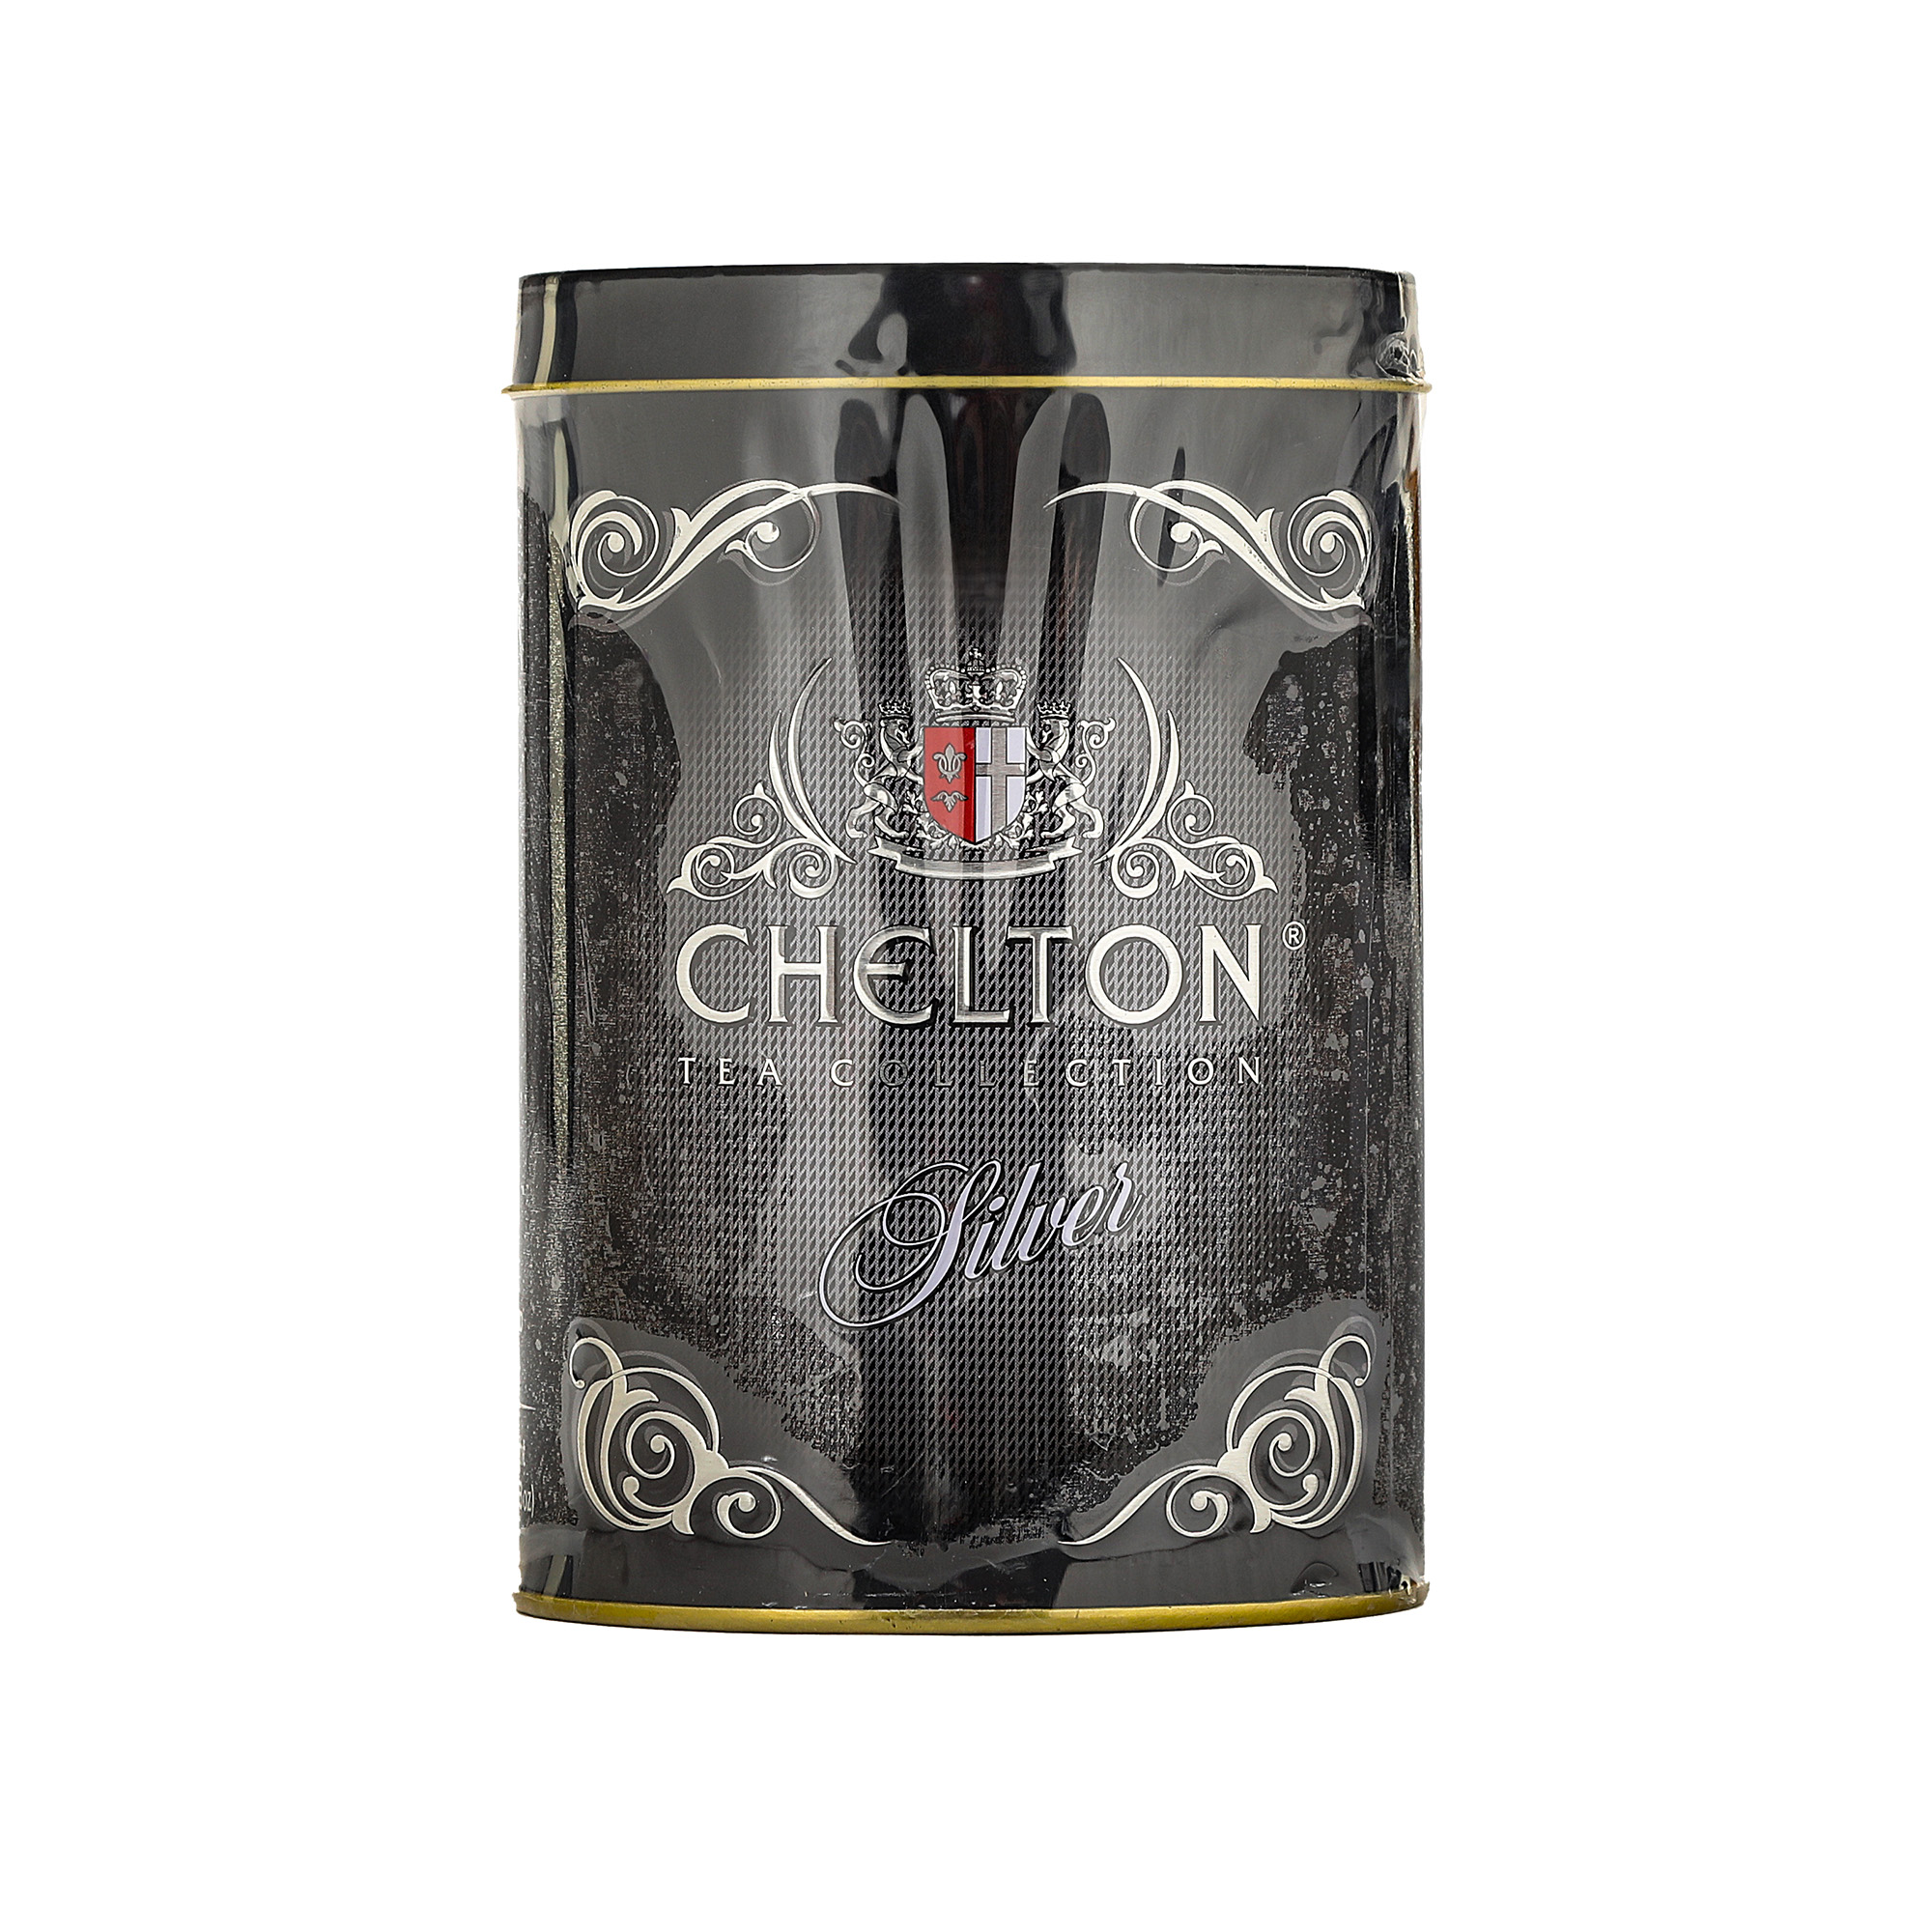 Чай Chelton Отборный среднелистовой, 100 г чай chelton beautiful lily прекрасные лилии жестяная банка 80 г